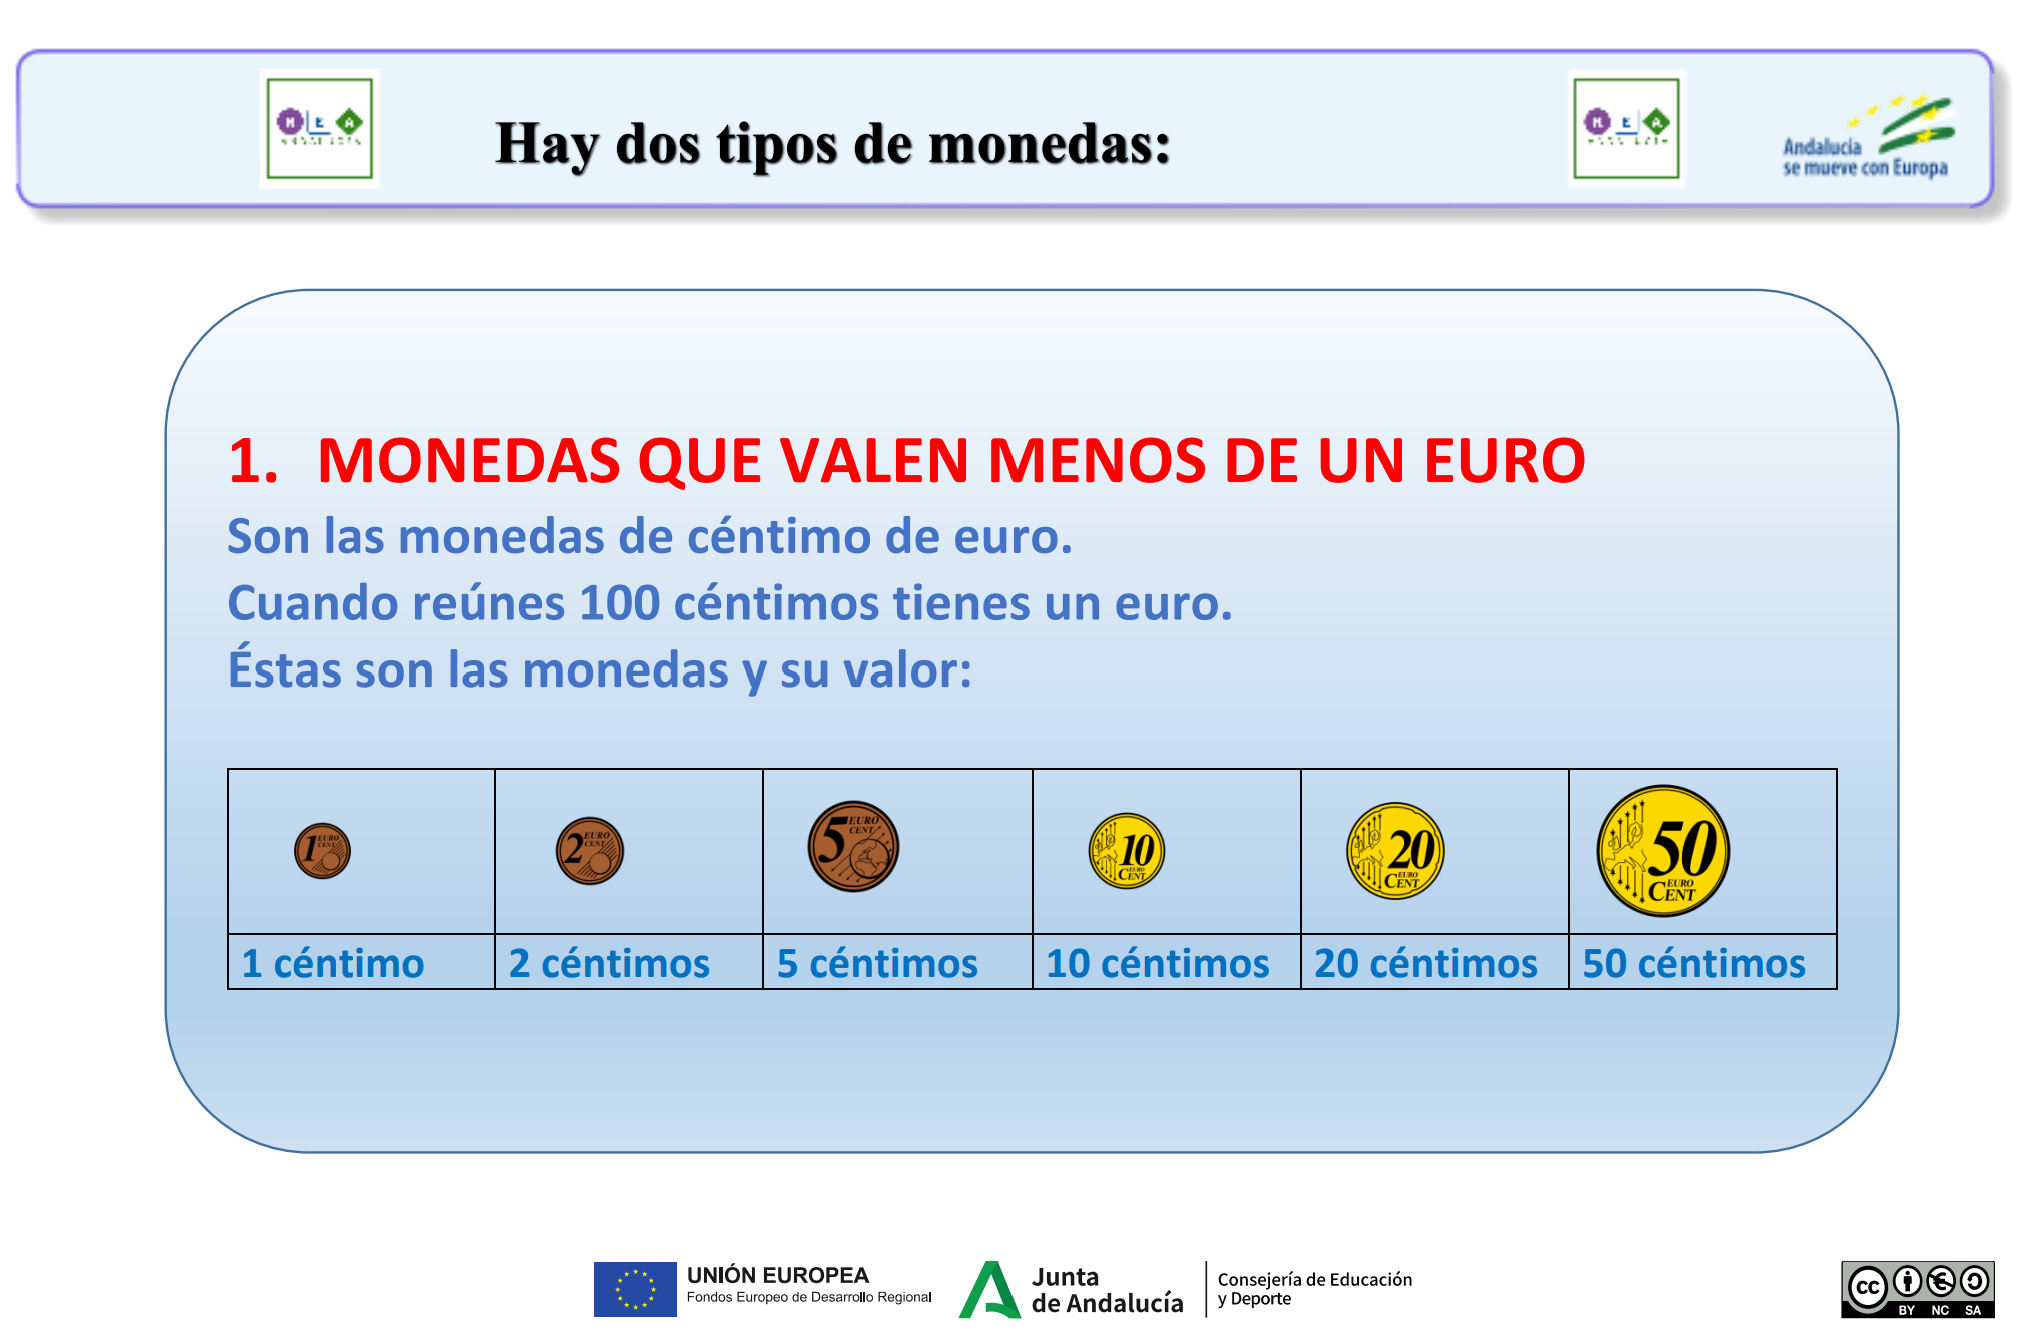 Las monedas que valen menos de un euro son las monedas de céntimos de euro. Cuando reunes 100 céntimos tienes un euro. Las monedas que valen menos de un euro son las de uno, dos, cinco, diez, veinte y cincuenta céntimos.